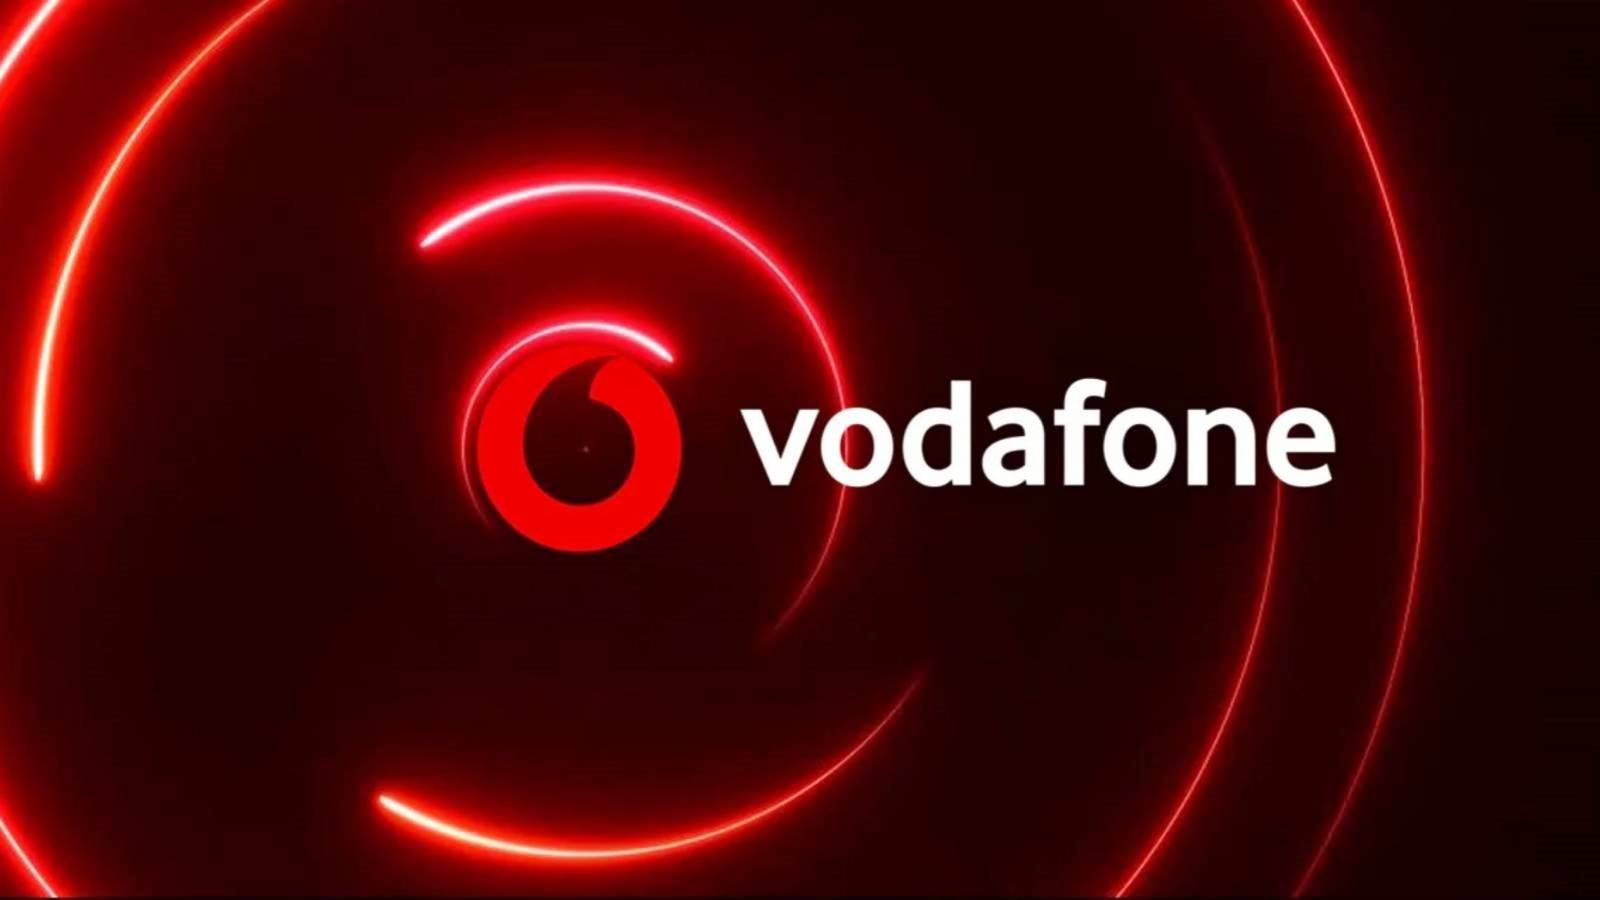 Vodafone VIKTIGT beslut Meddela rumänska kunder